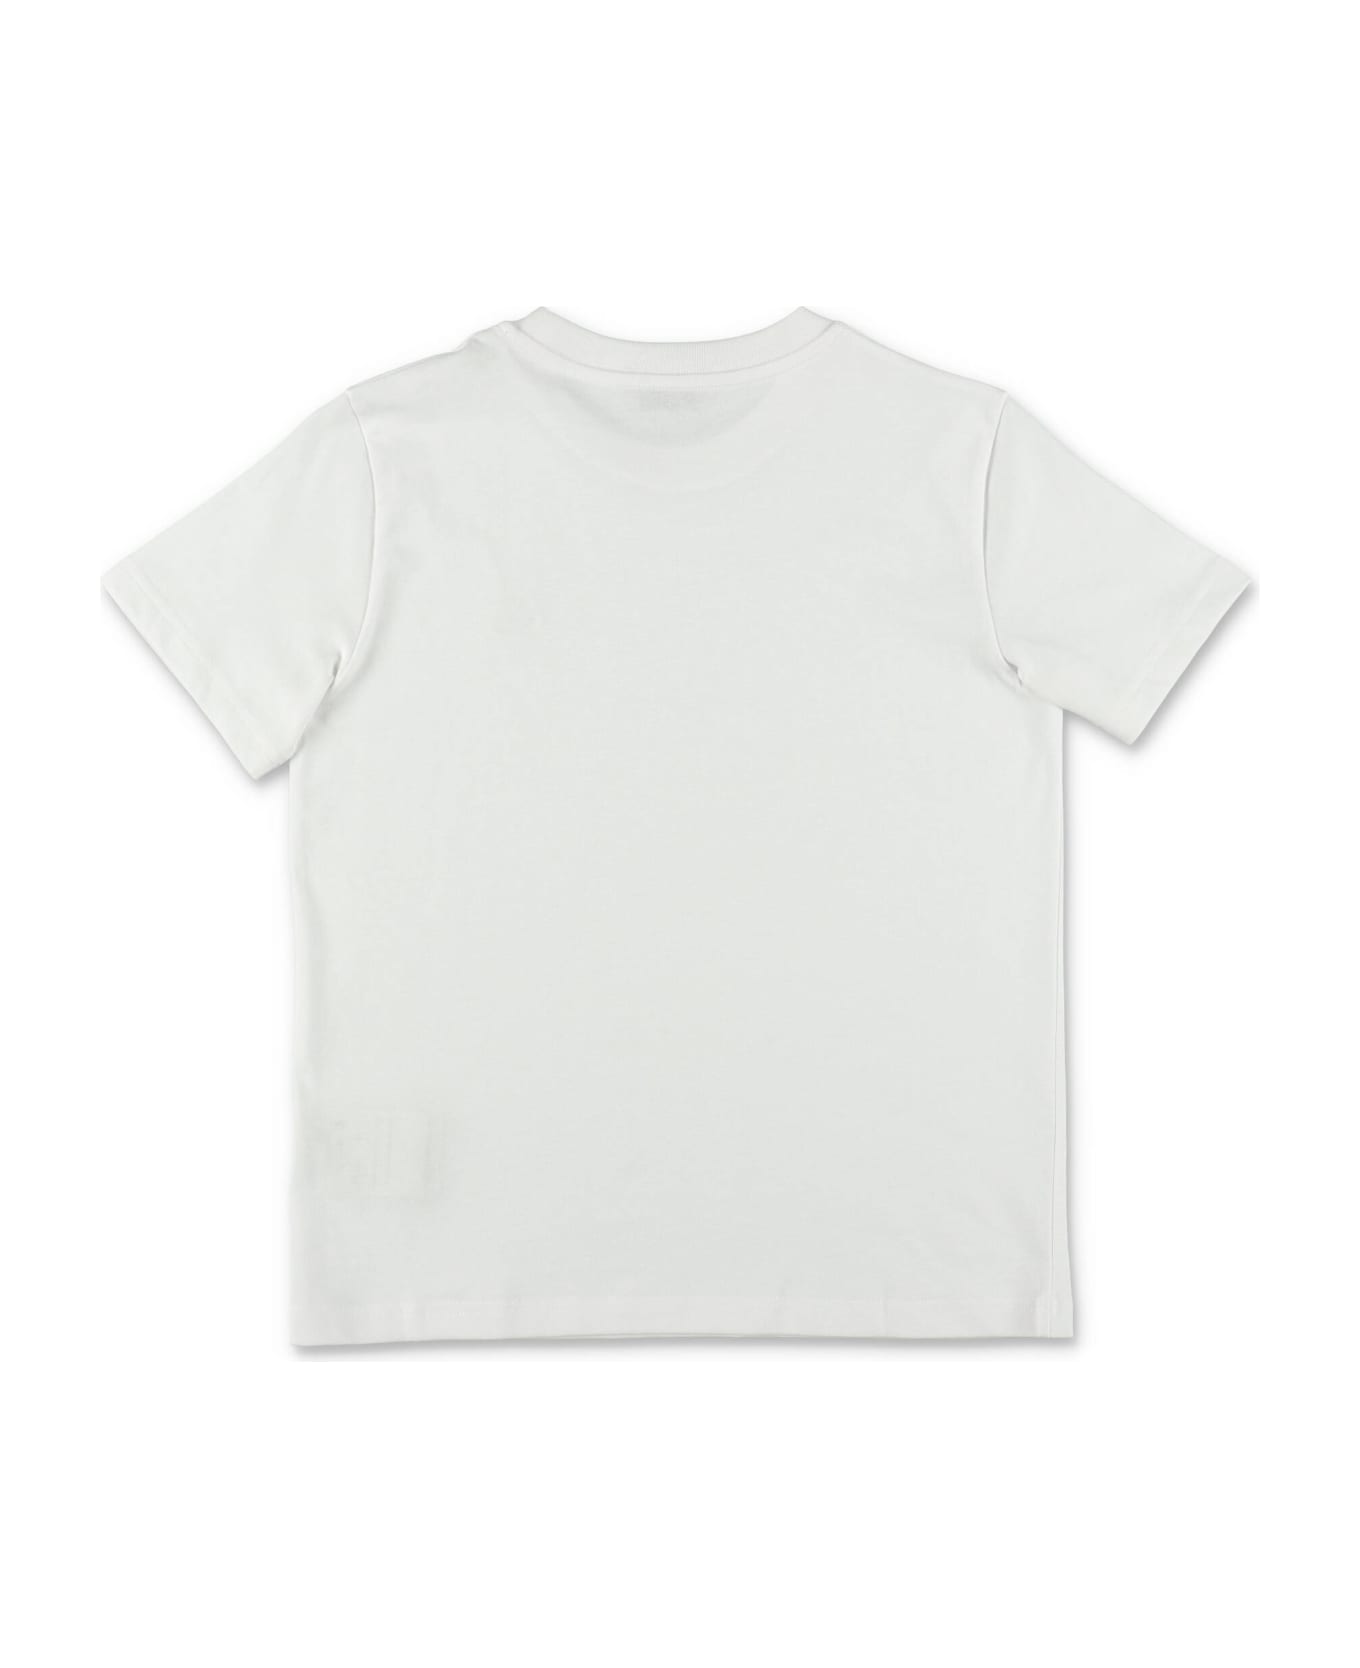 Moncler T-shirt Bianca In Jersey Di Cotone Bambino - Bianco